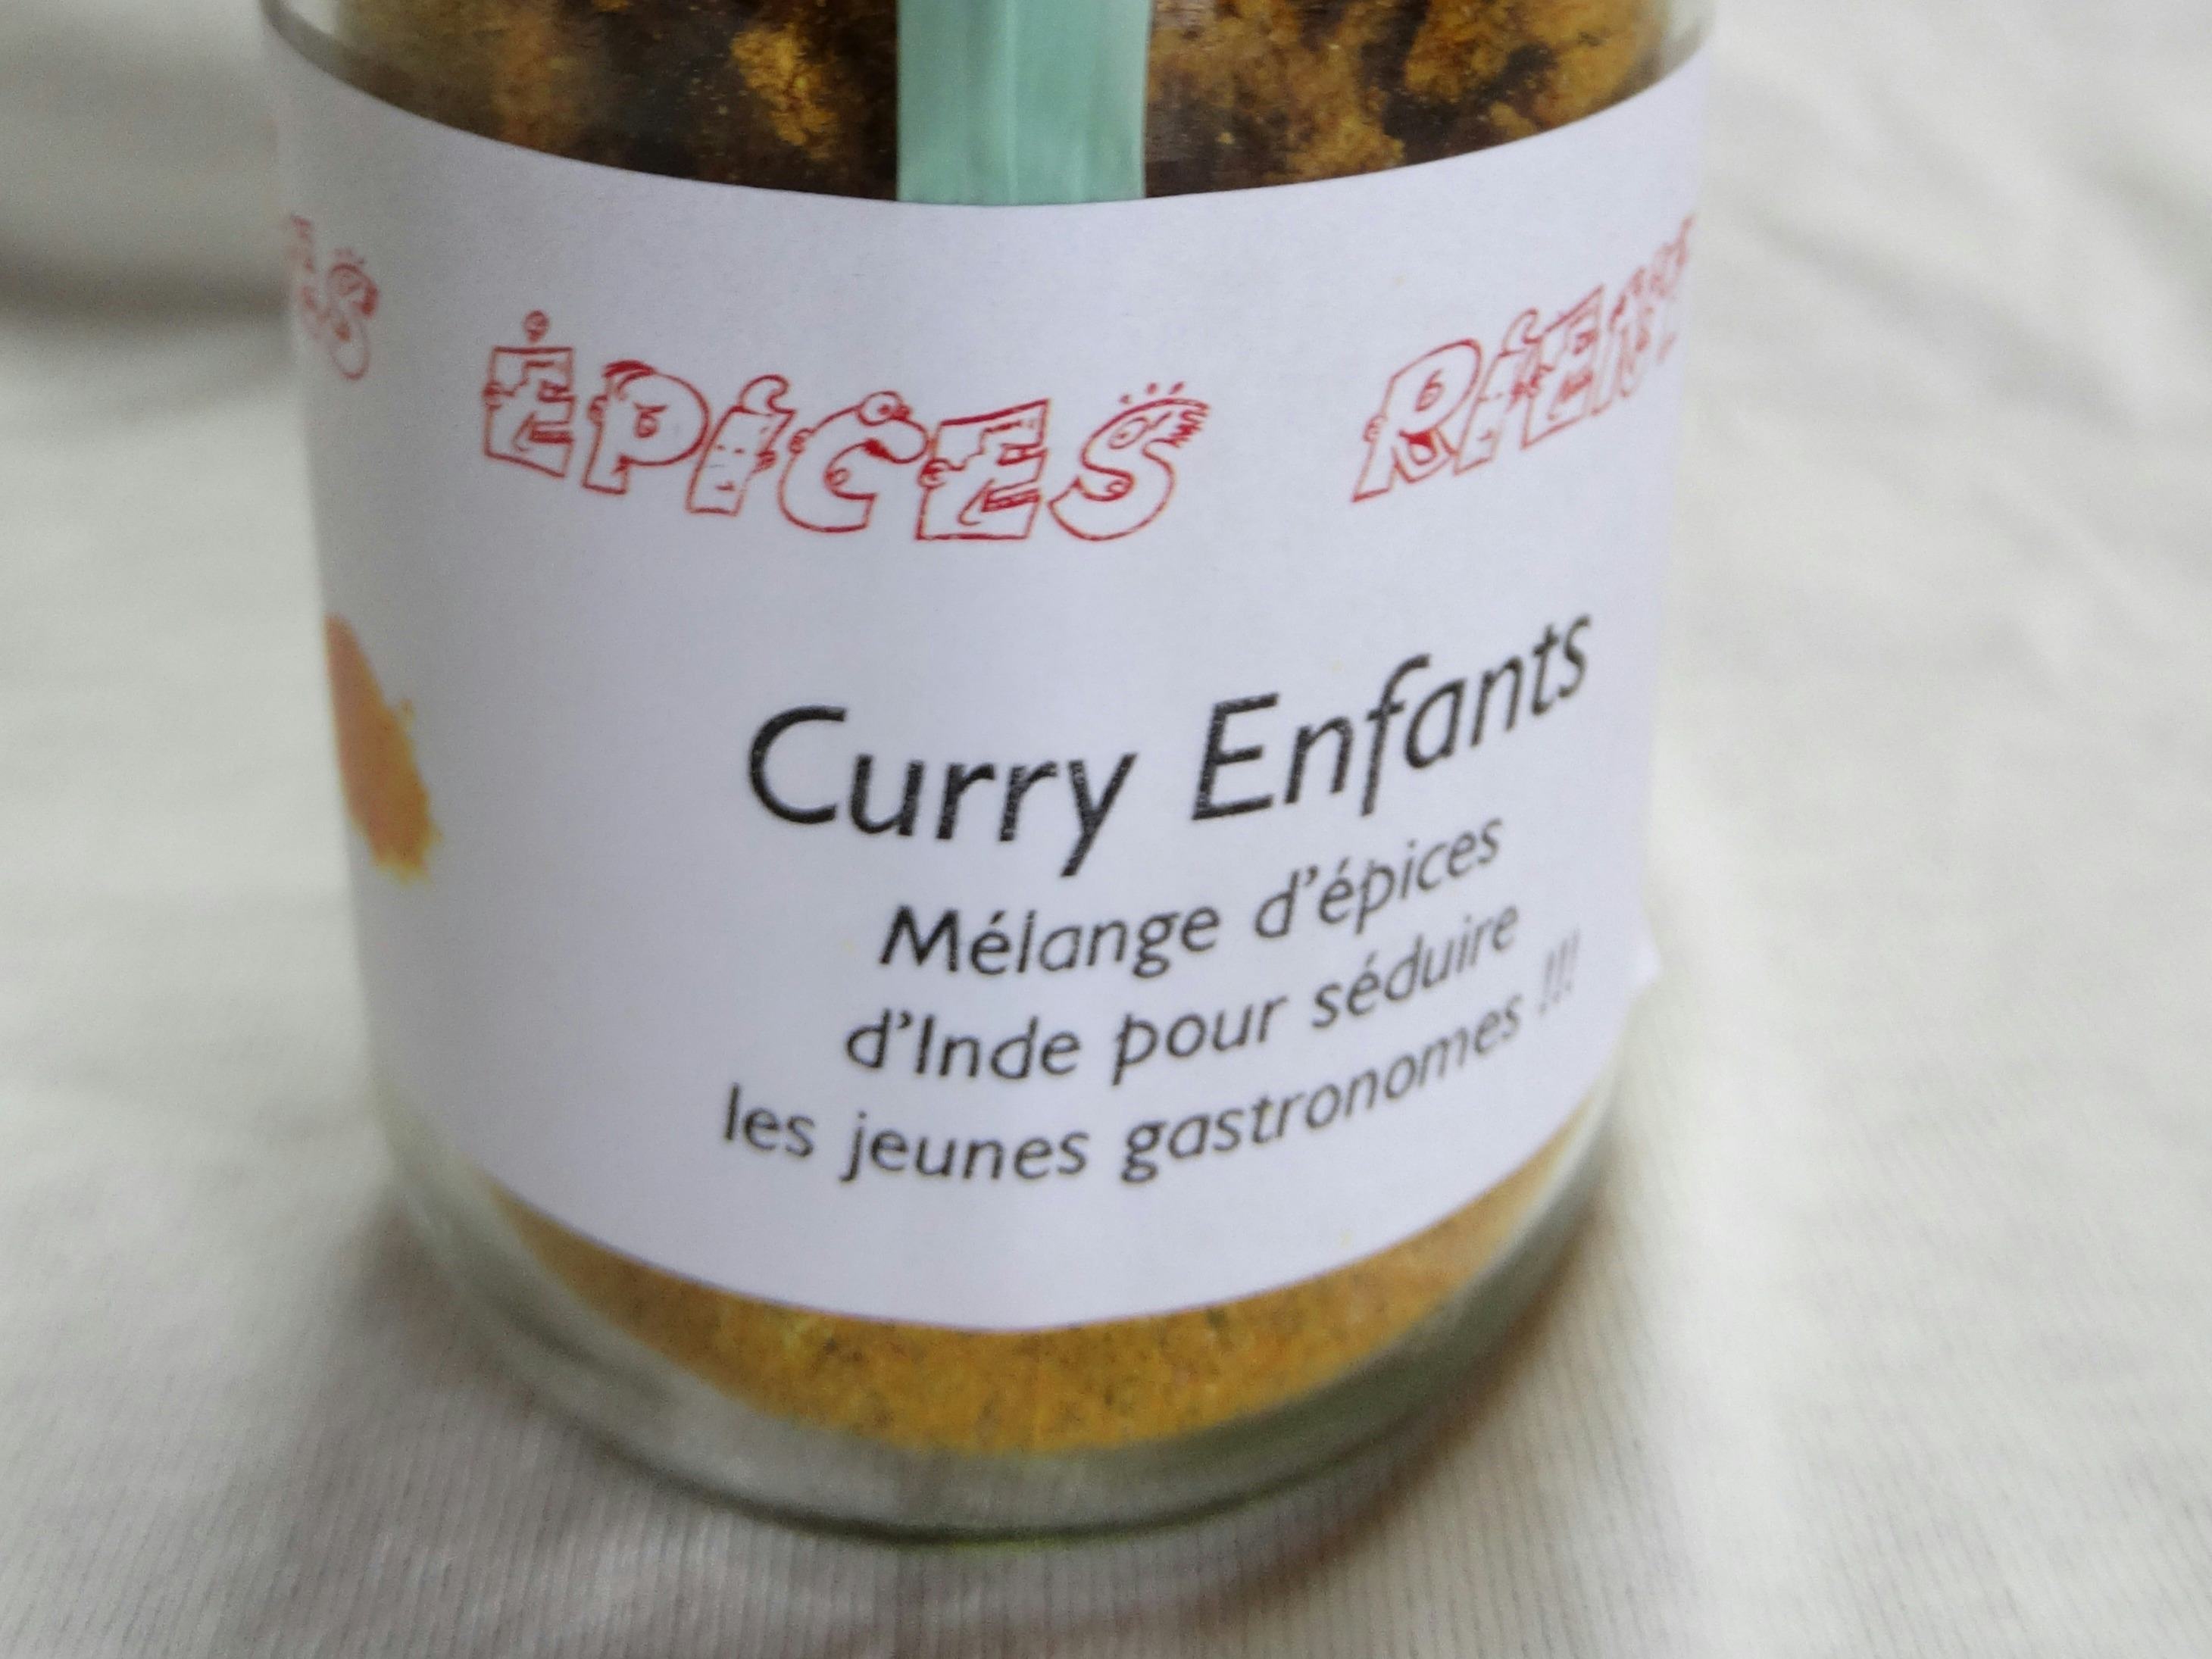 Curry enfant, produit artisanal en vente directe en Suisse